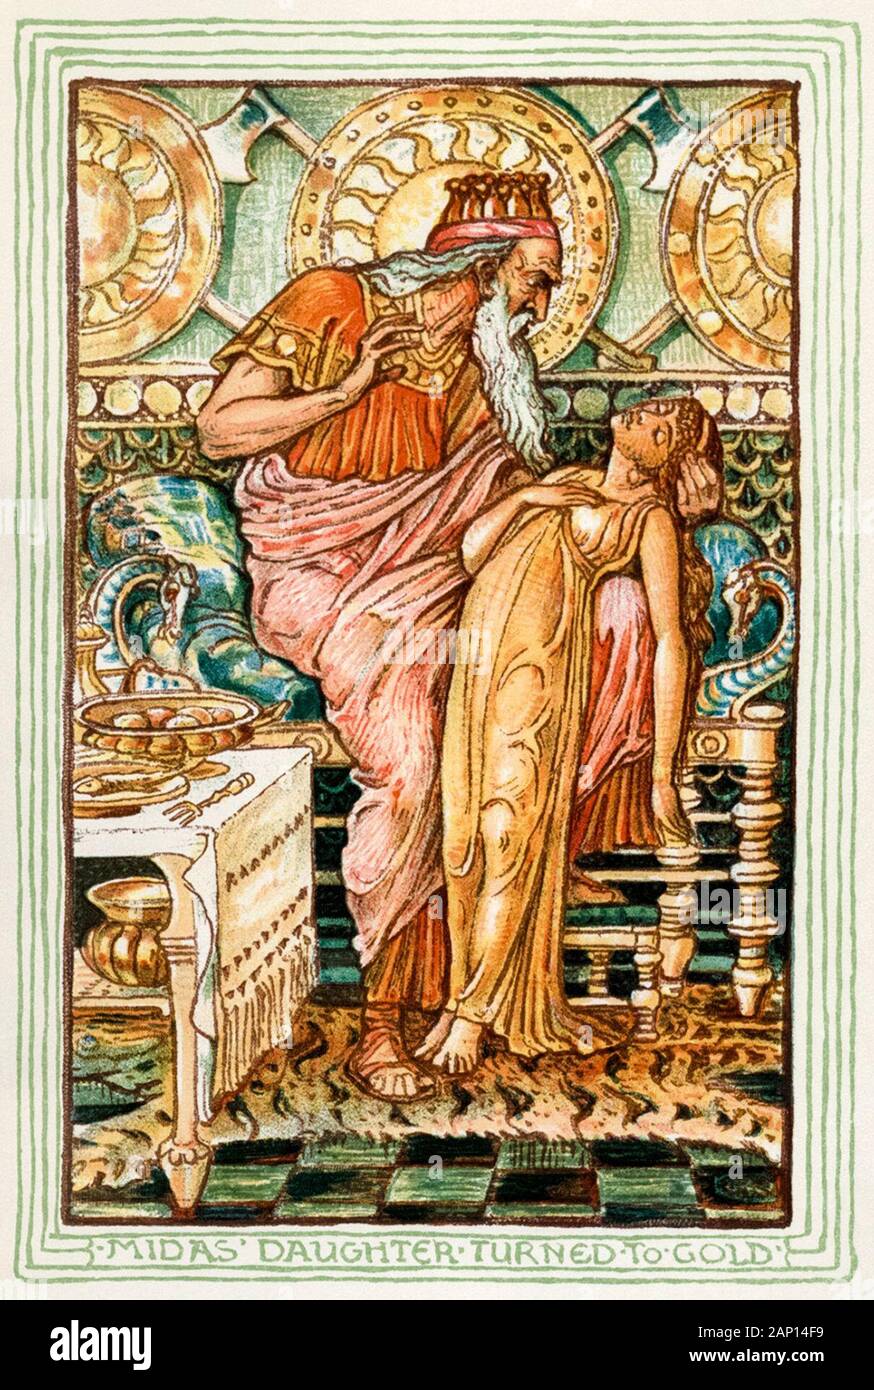 König Midas tuning, seine Tochter zu Gold, Illustration von Walter Crane, 1893 Stockfoto